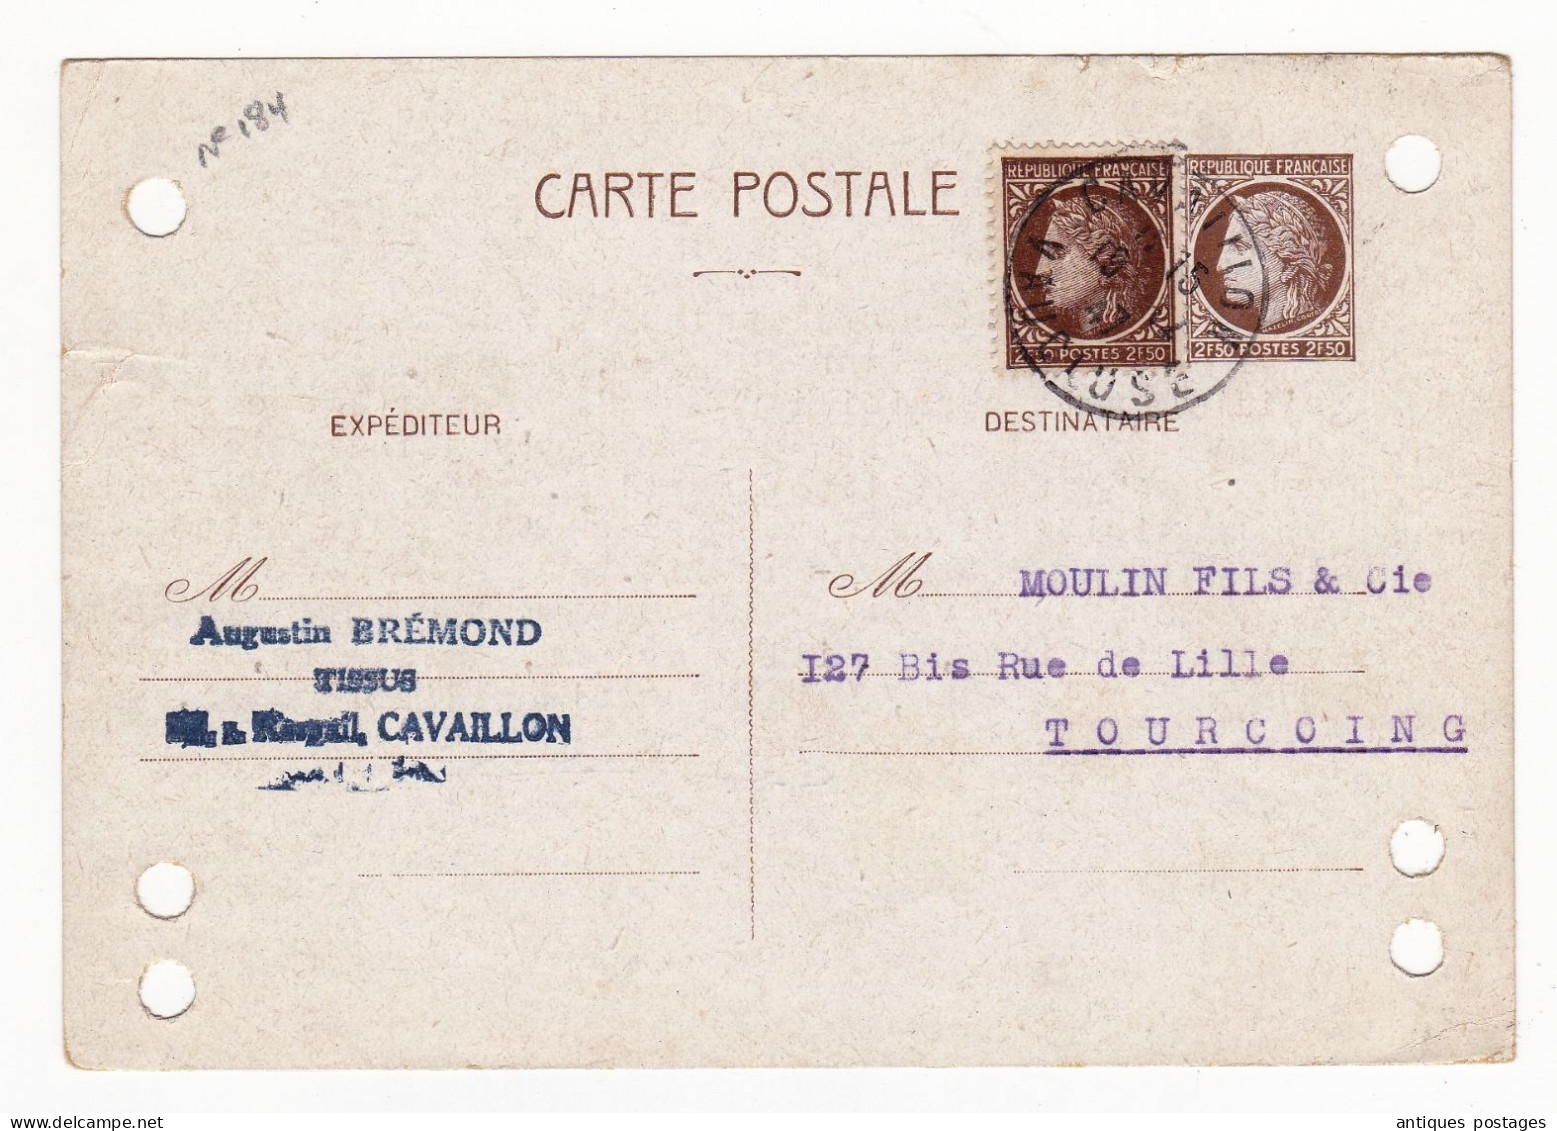 Entier Postal 1947 Cérès De Mazelin Cavaillon Vaucluse Tourcoing Moulin Fils & Cie Tissus - 1945-47 Ceres Of Mazelin